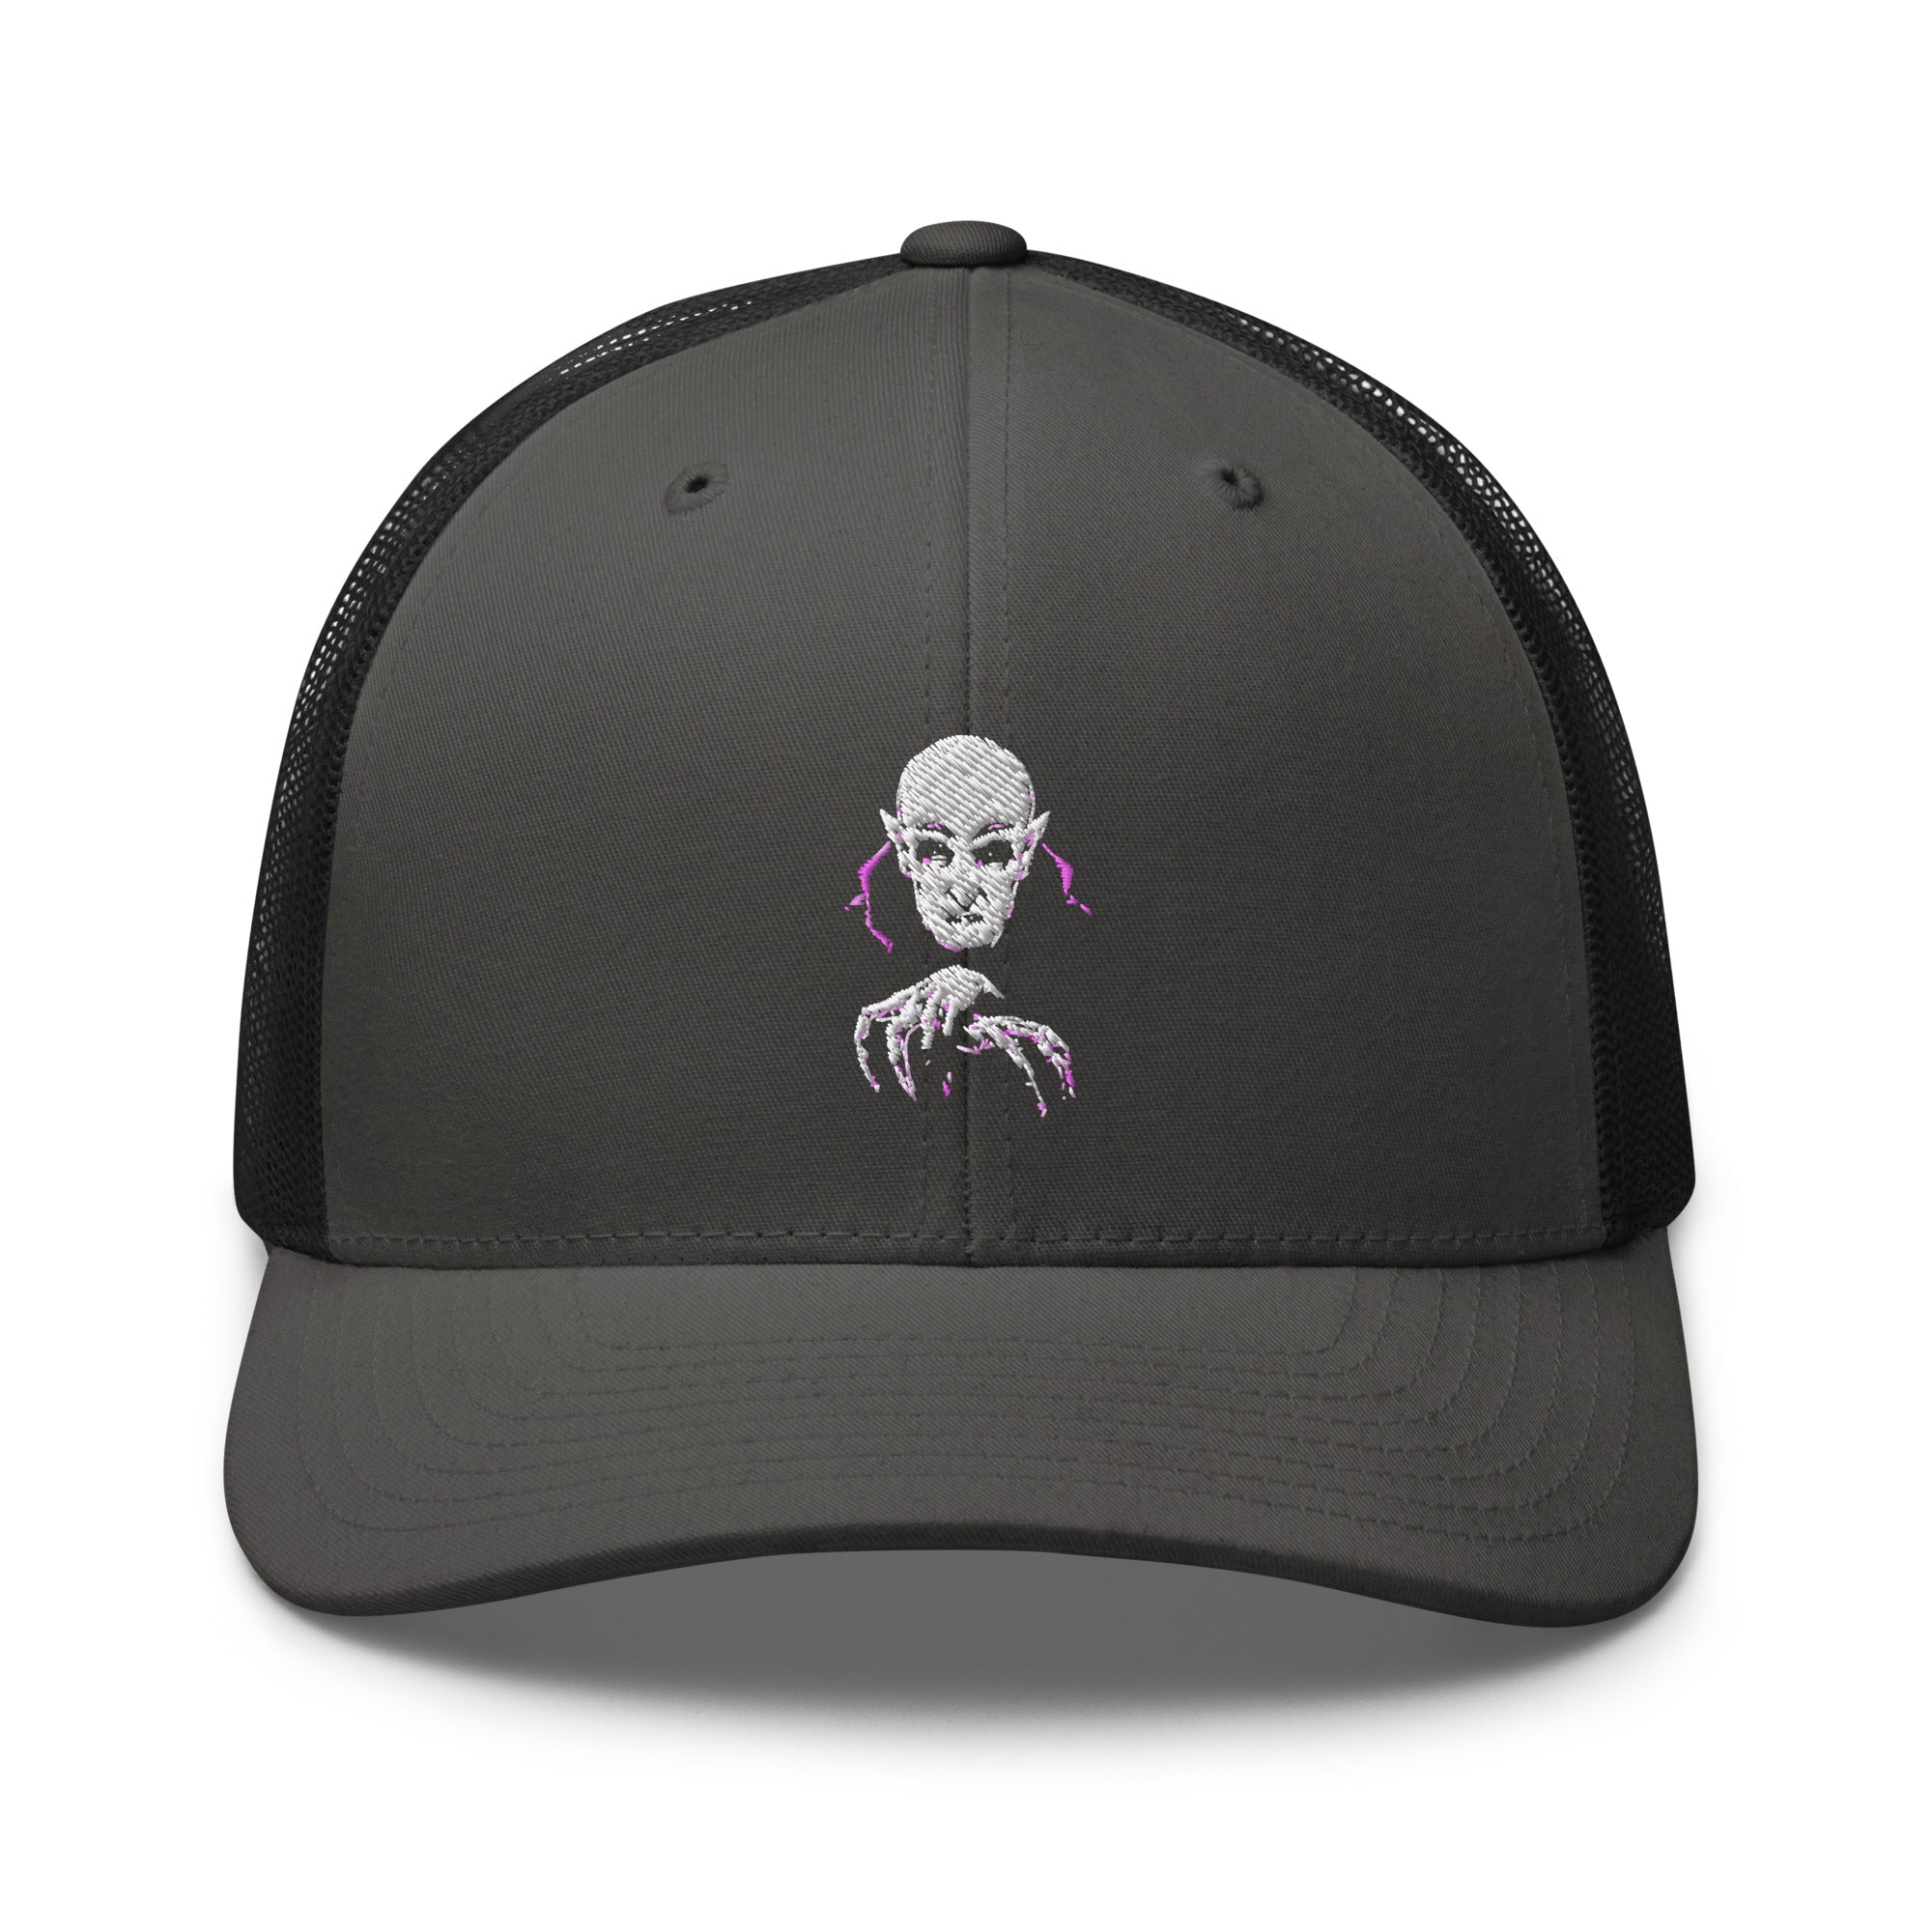 Classic Vampire Nosferatu Embroidered Retro Trucker Cap Snapback Hat